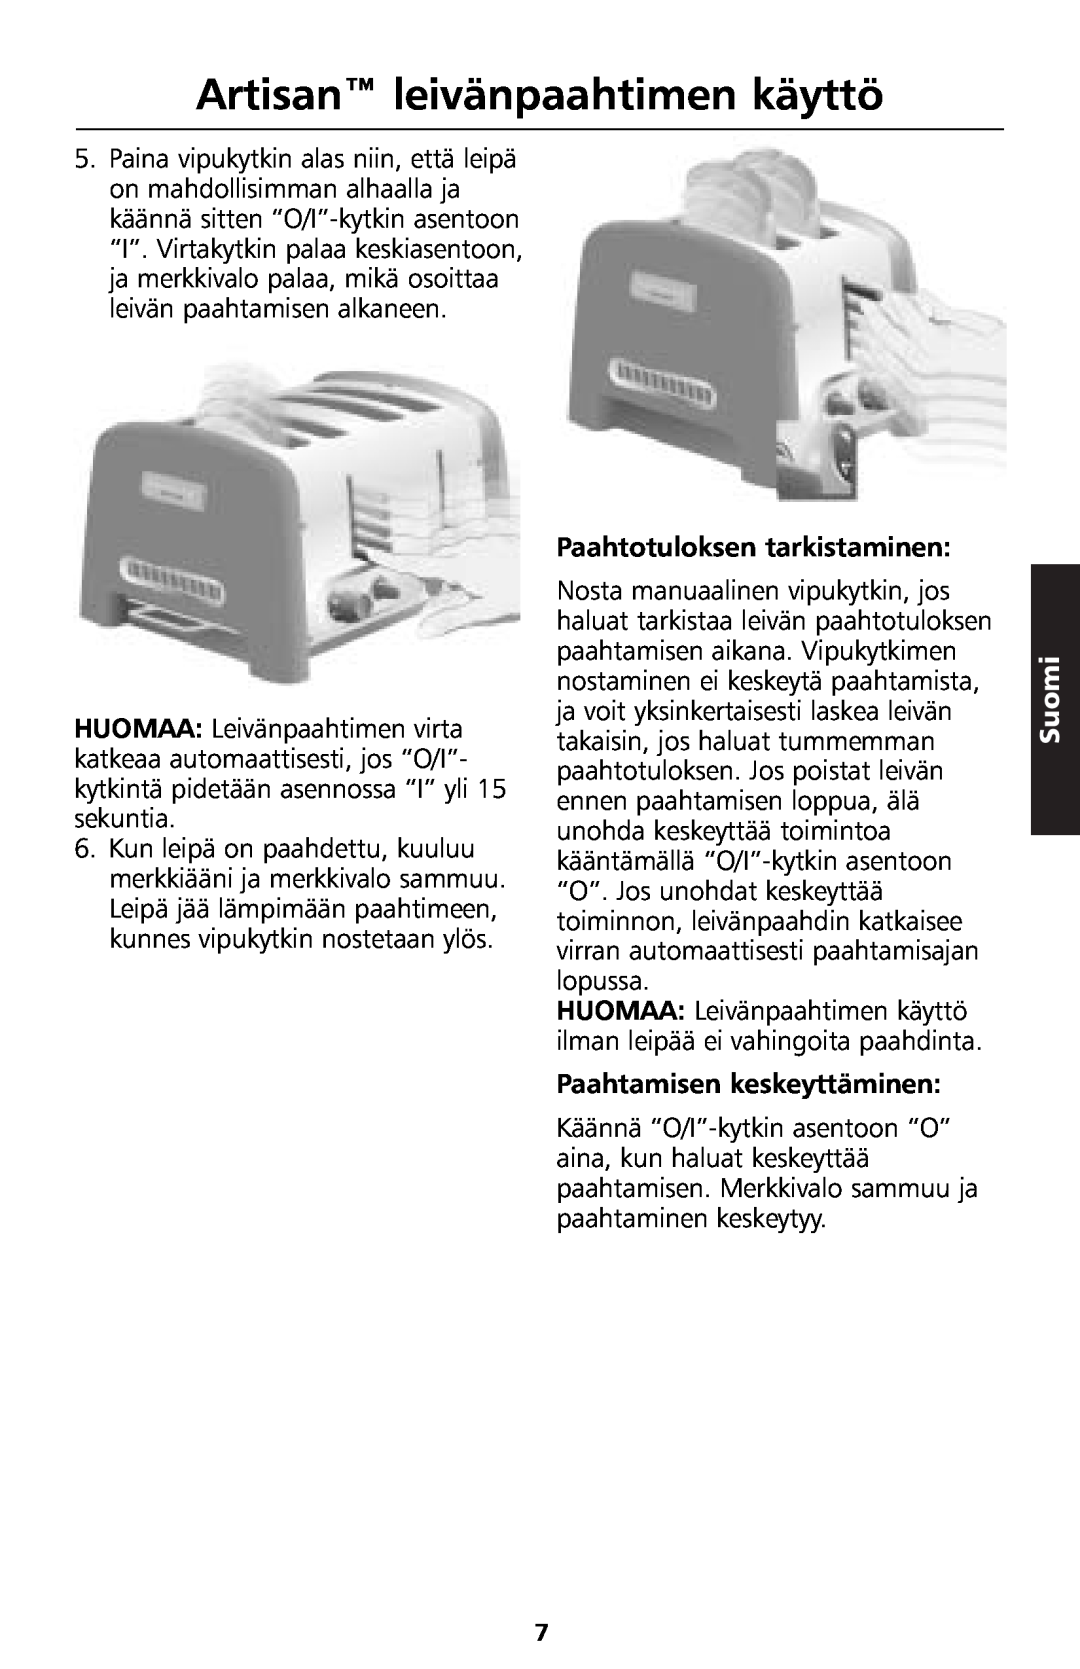 KitchenAid 5KTT890 manual Artisan leivänpaahtimen käyttö, Paahtotuloksen tarkistaminen, Paahtamisen keskeyttäminen, Suomi 